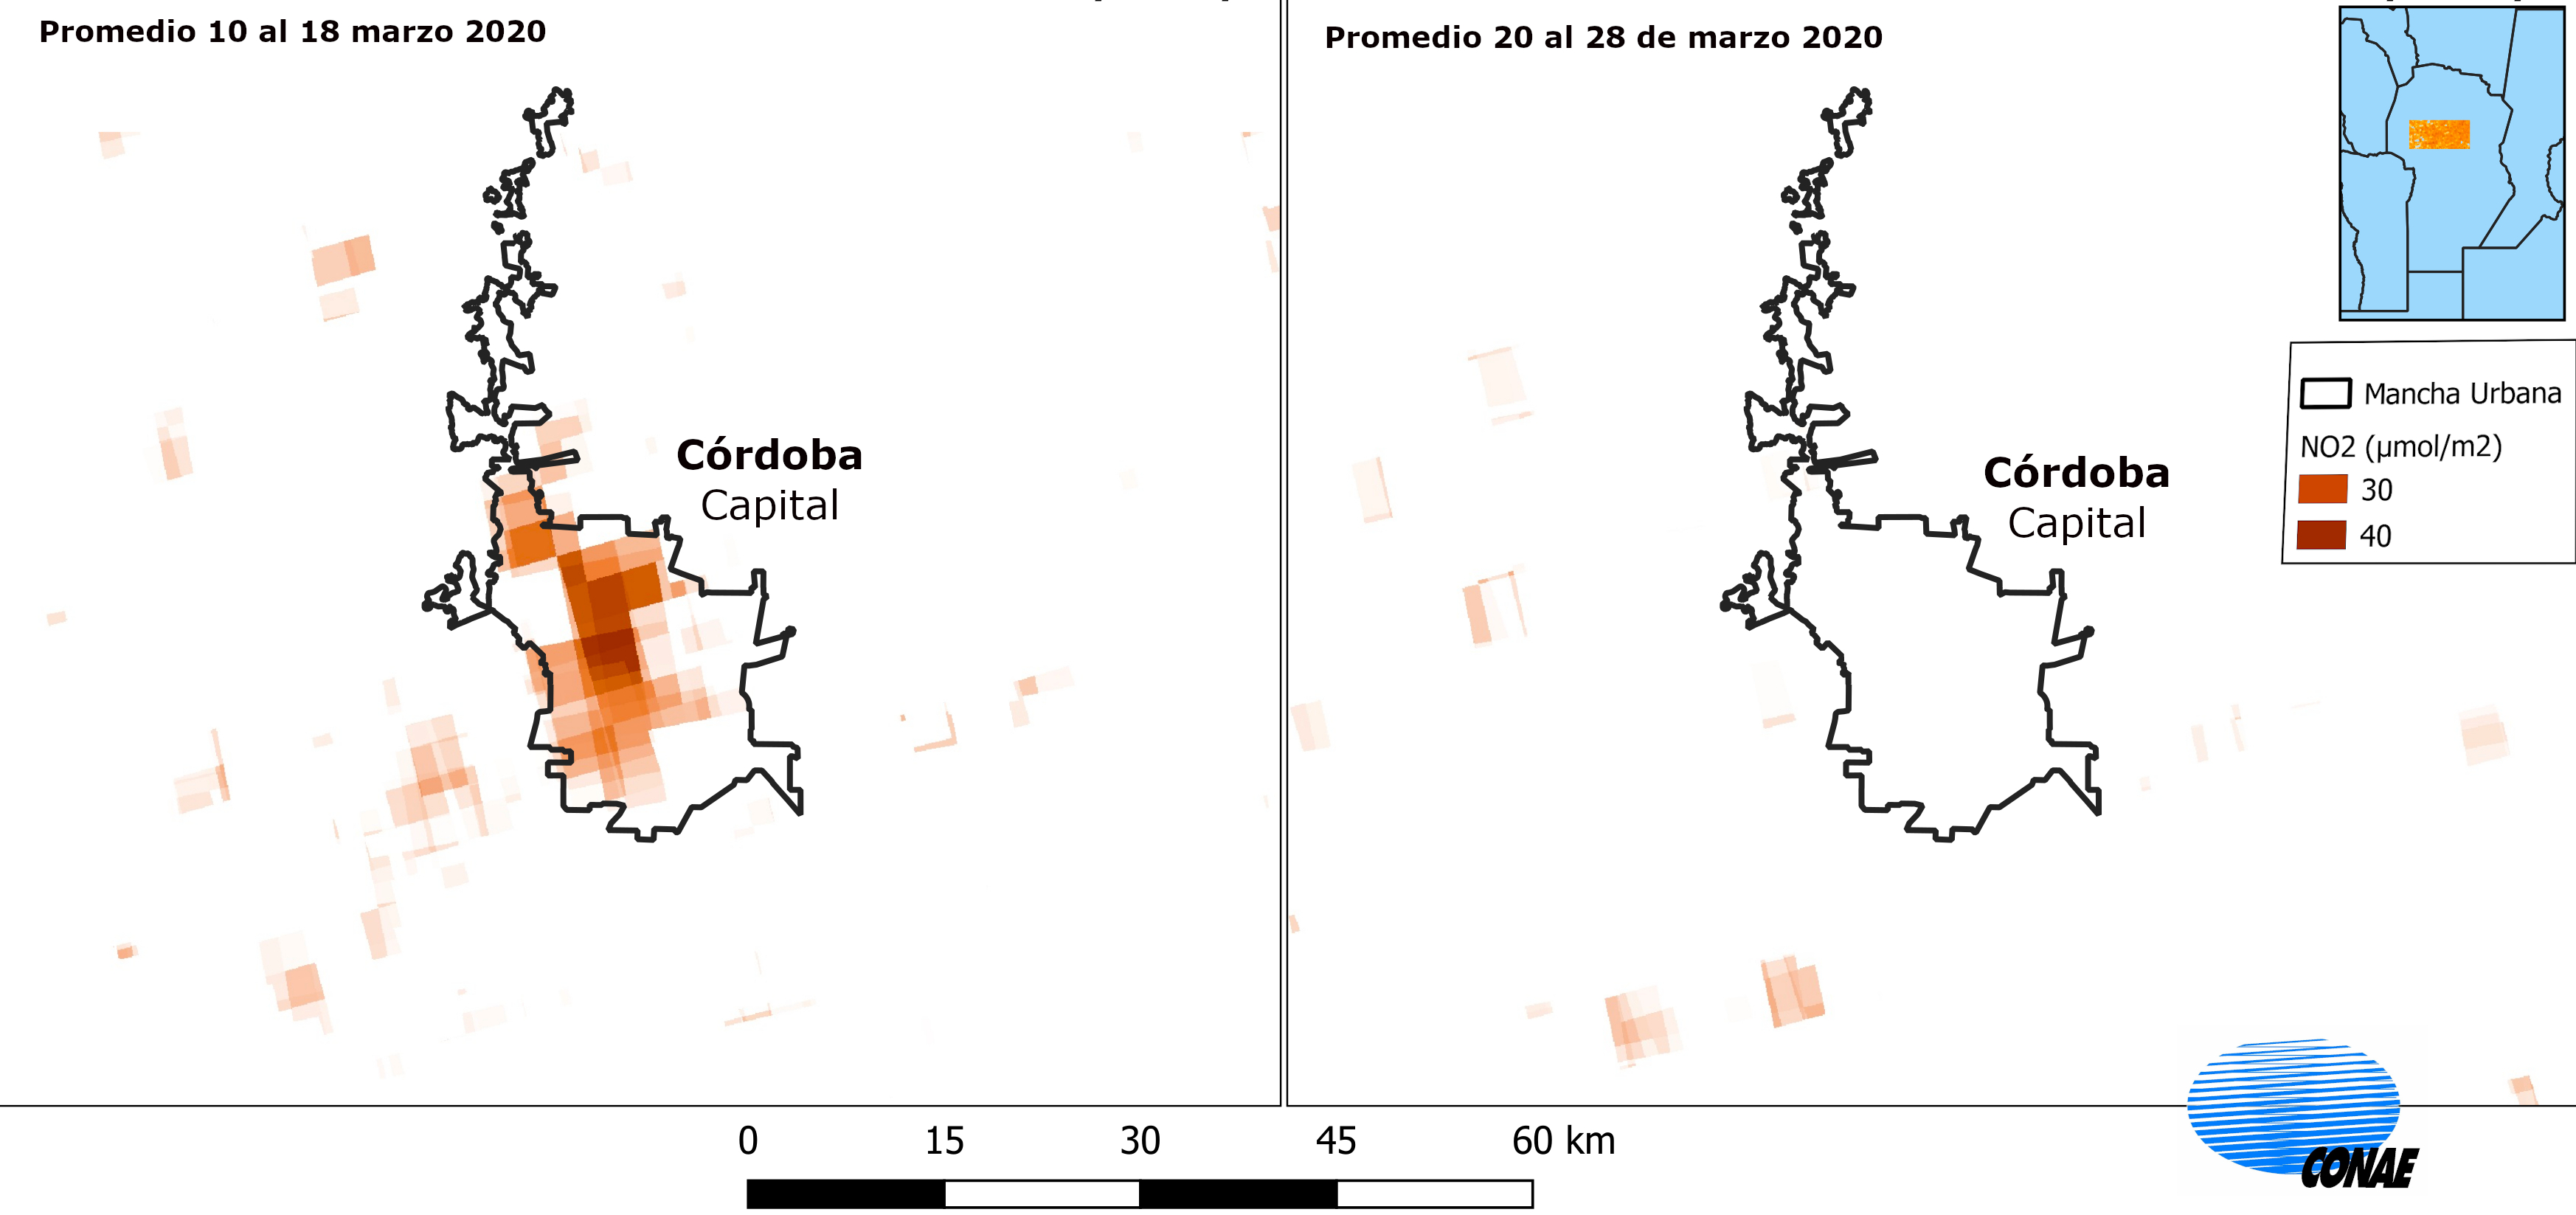  Dióxido de Nitrógeno en la atmósfera de la ciudad de Córdoba, en fechas pre y post Aislamiento Social, Preventivo y Obligatorio. 